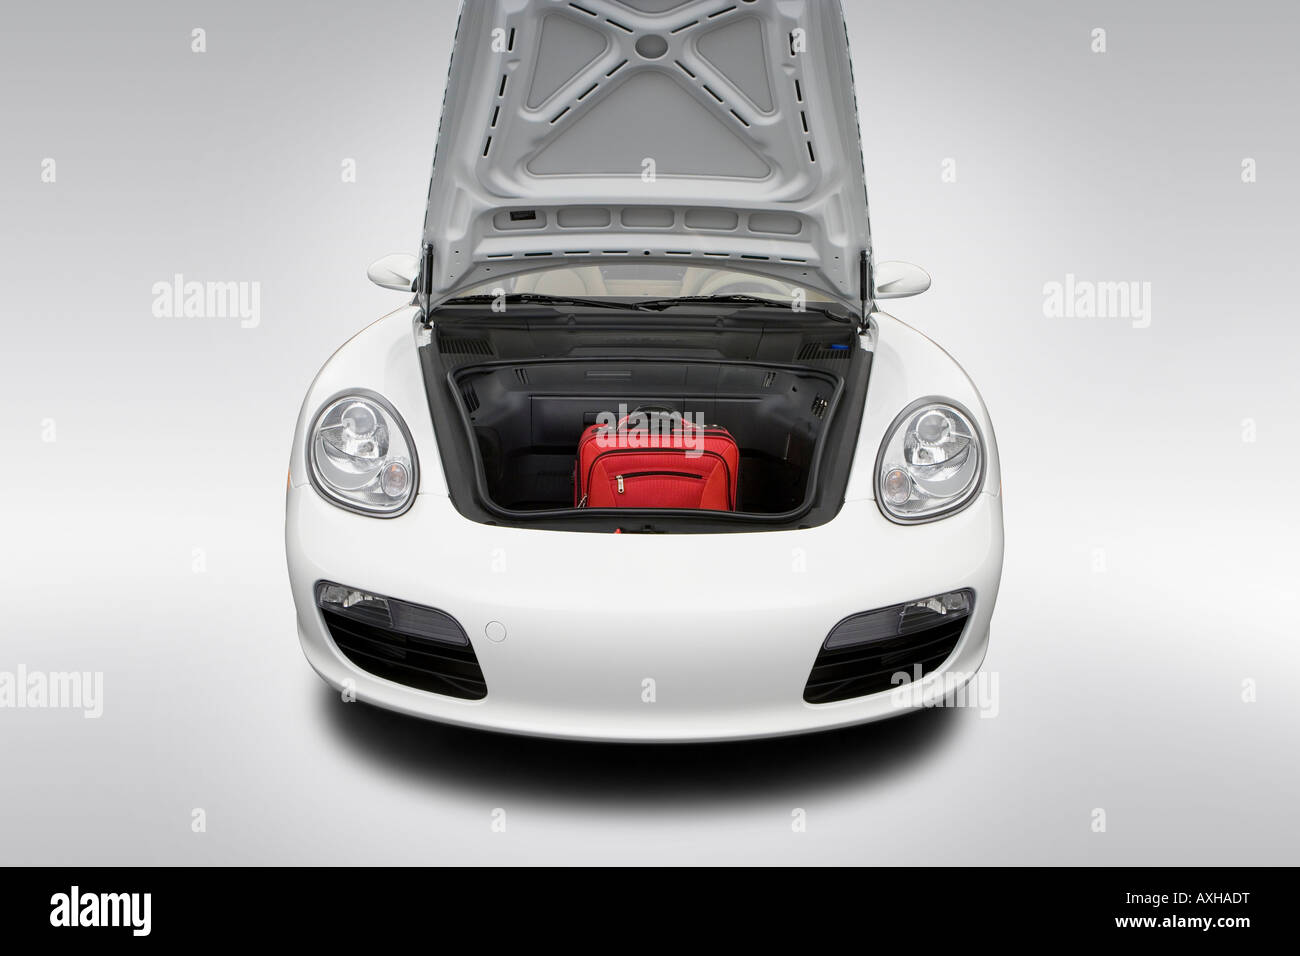 2008 Porsche Boxster in weiß - Stamm Requisiten Stockfoto